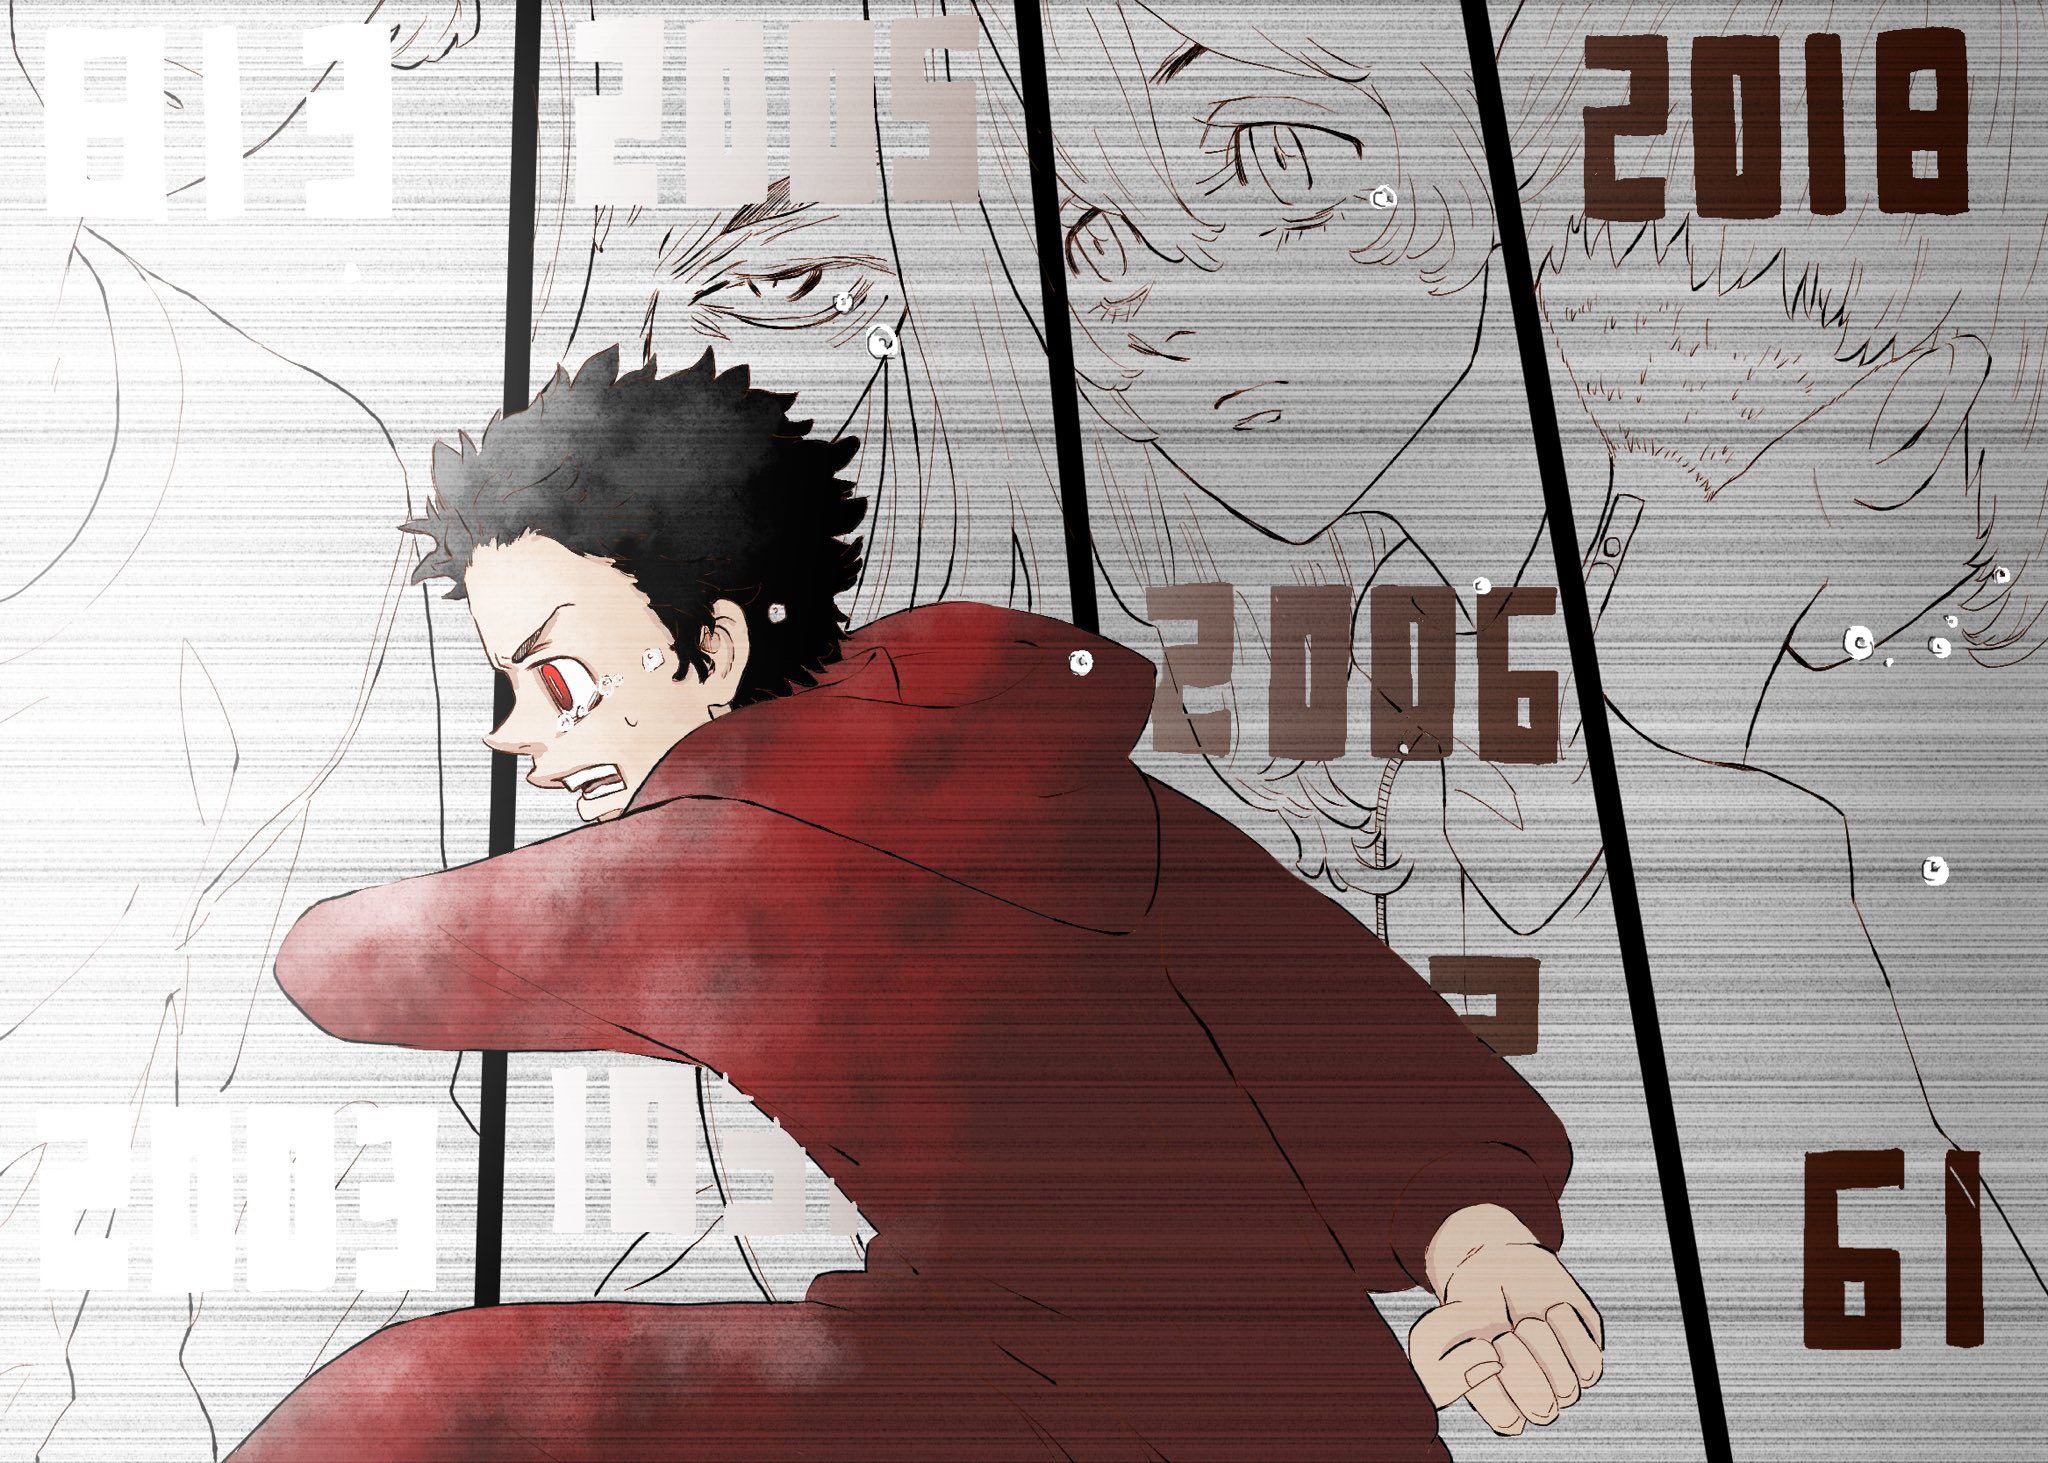 Anime Tokyo Revengers HD Wallpaper | Background Image